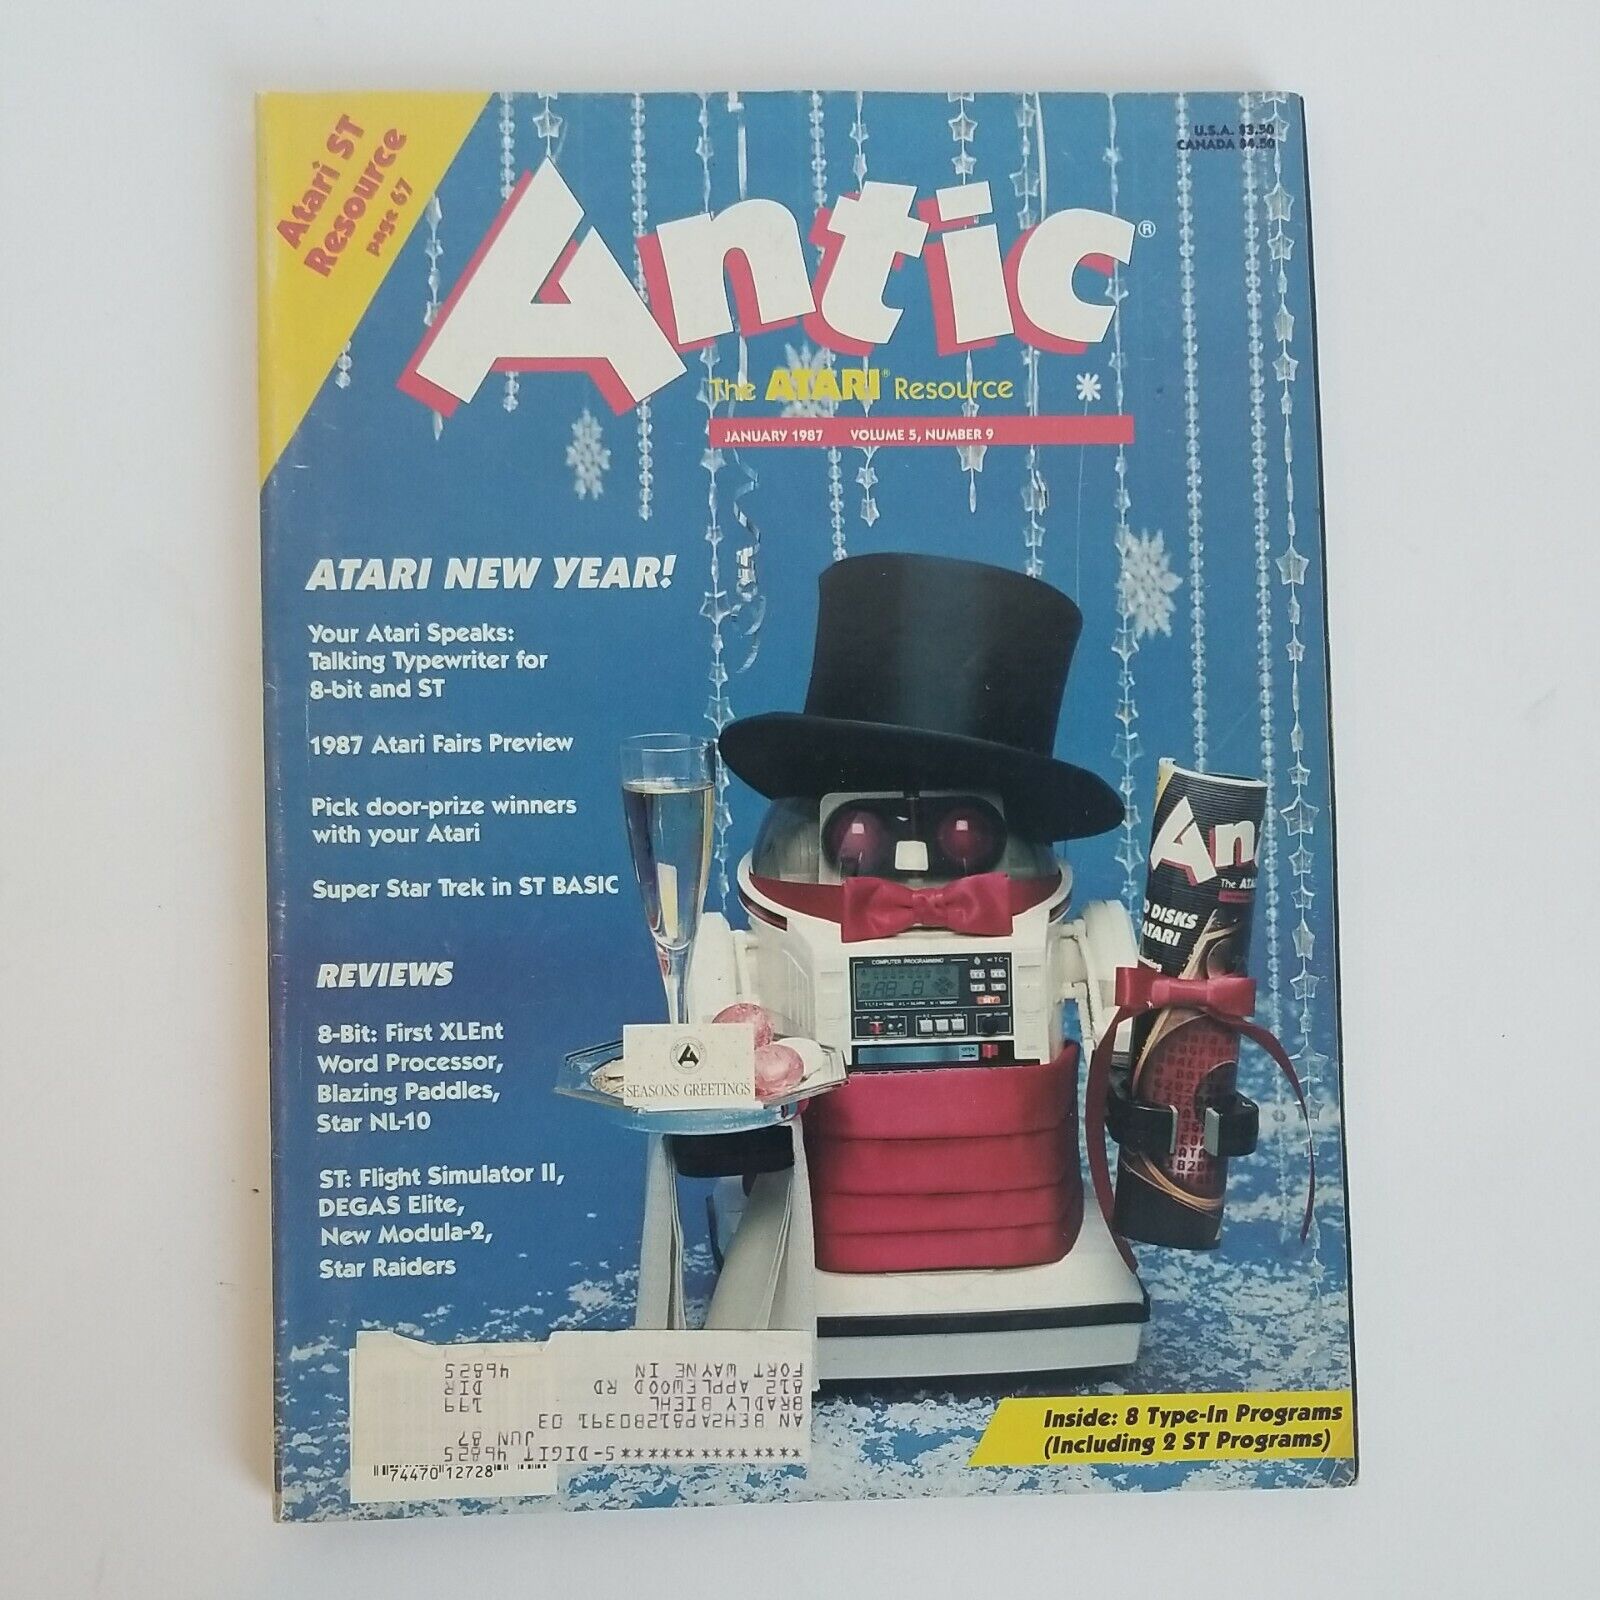 Antic Magazine - The Atari Resource - January 1987, Volume 5, Number 9 400/800